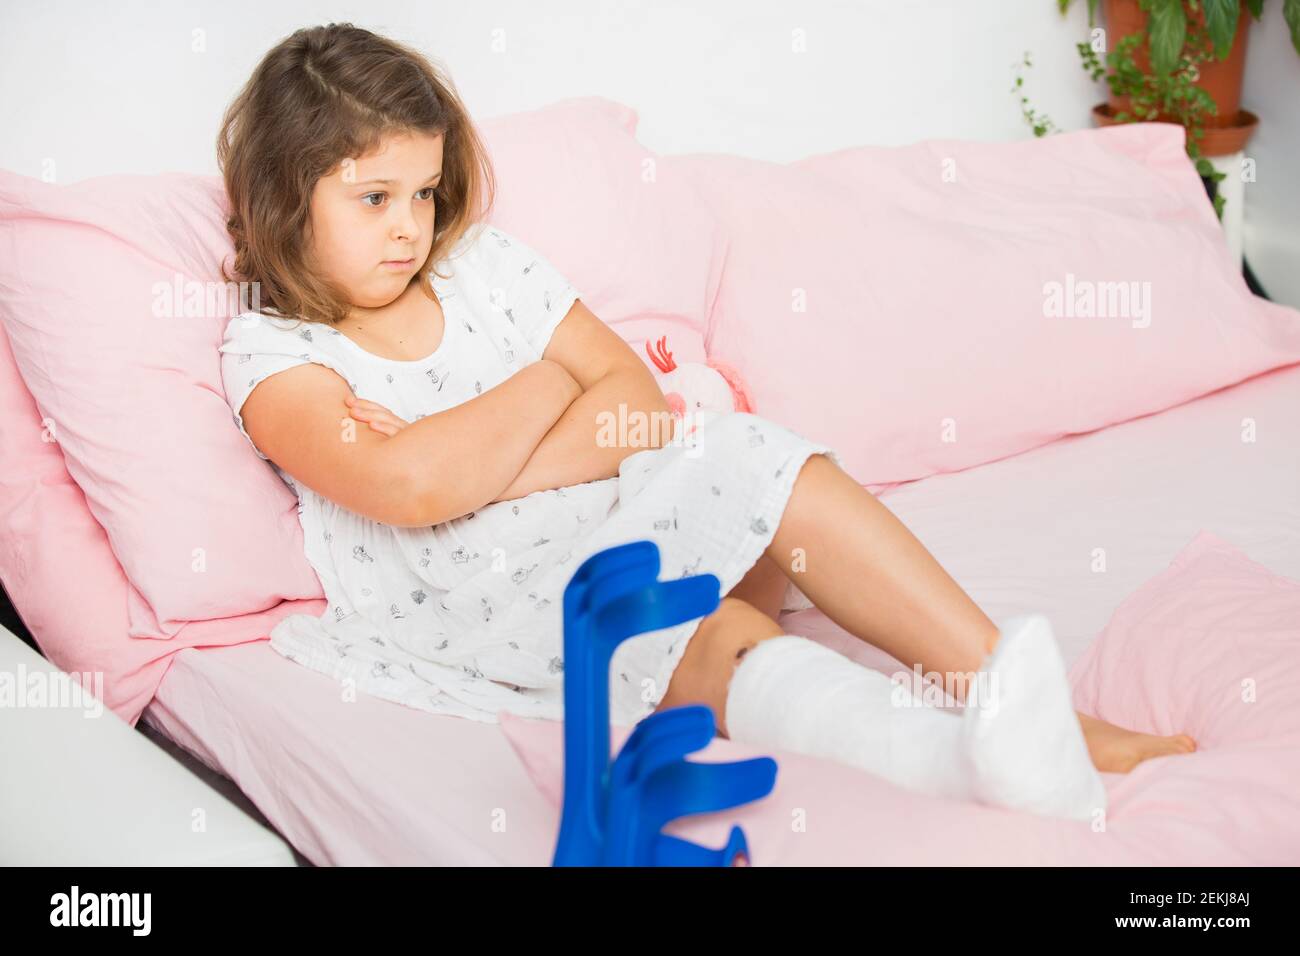 Une jeune fille triste se trouve sur son lit après une coulée dans la salle d'urgence. L'enfant a une jambe cassée, un os cassé Banque D'Images